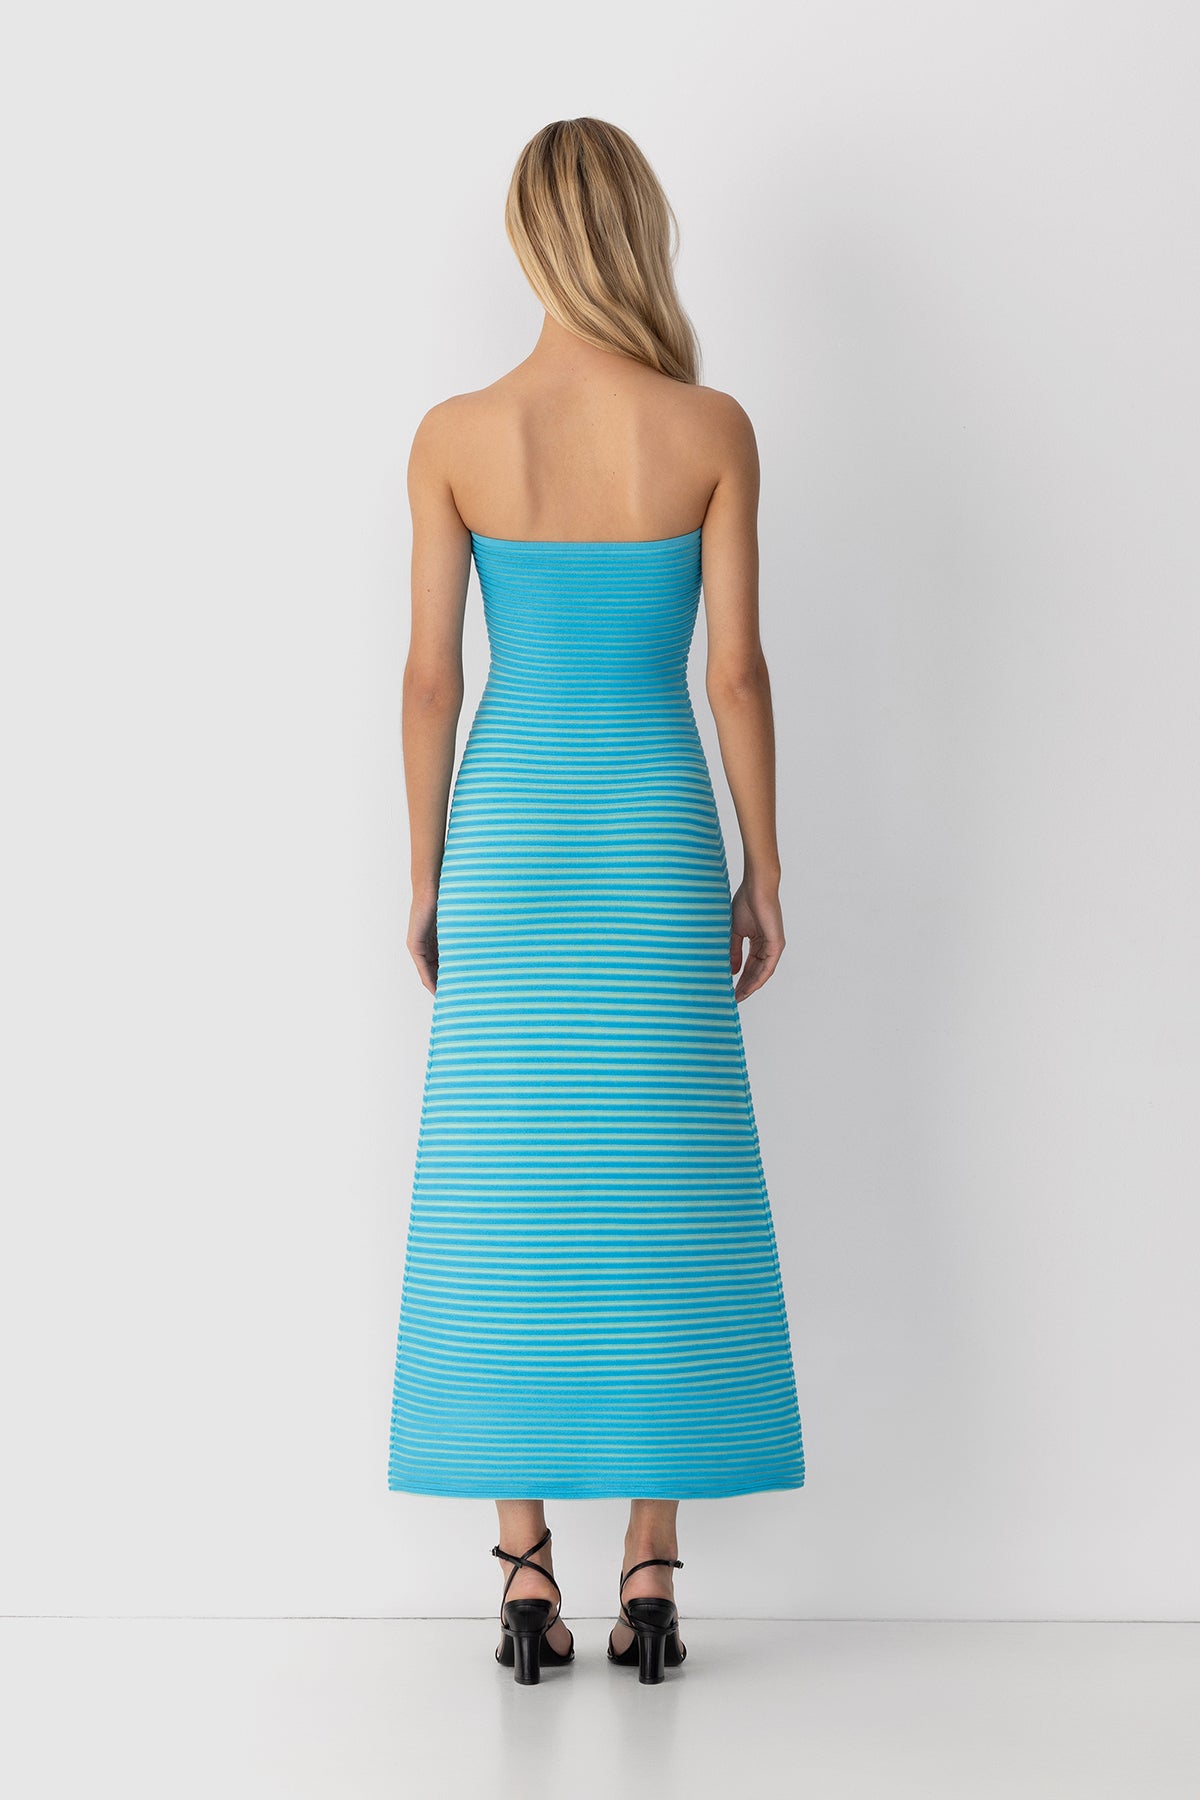 Sunmor Knit Maxi Dress - Aqua